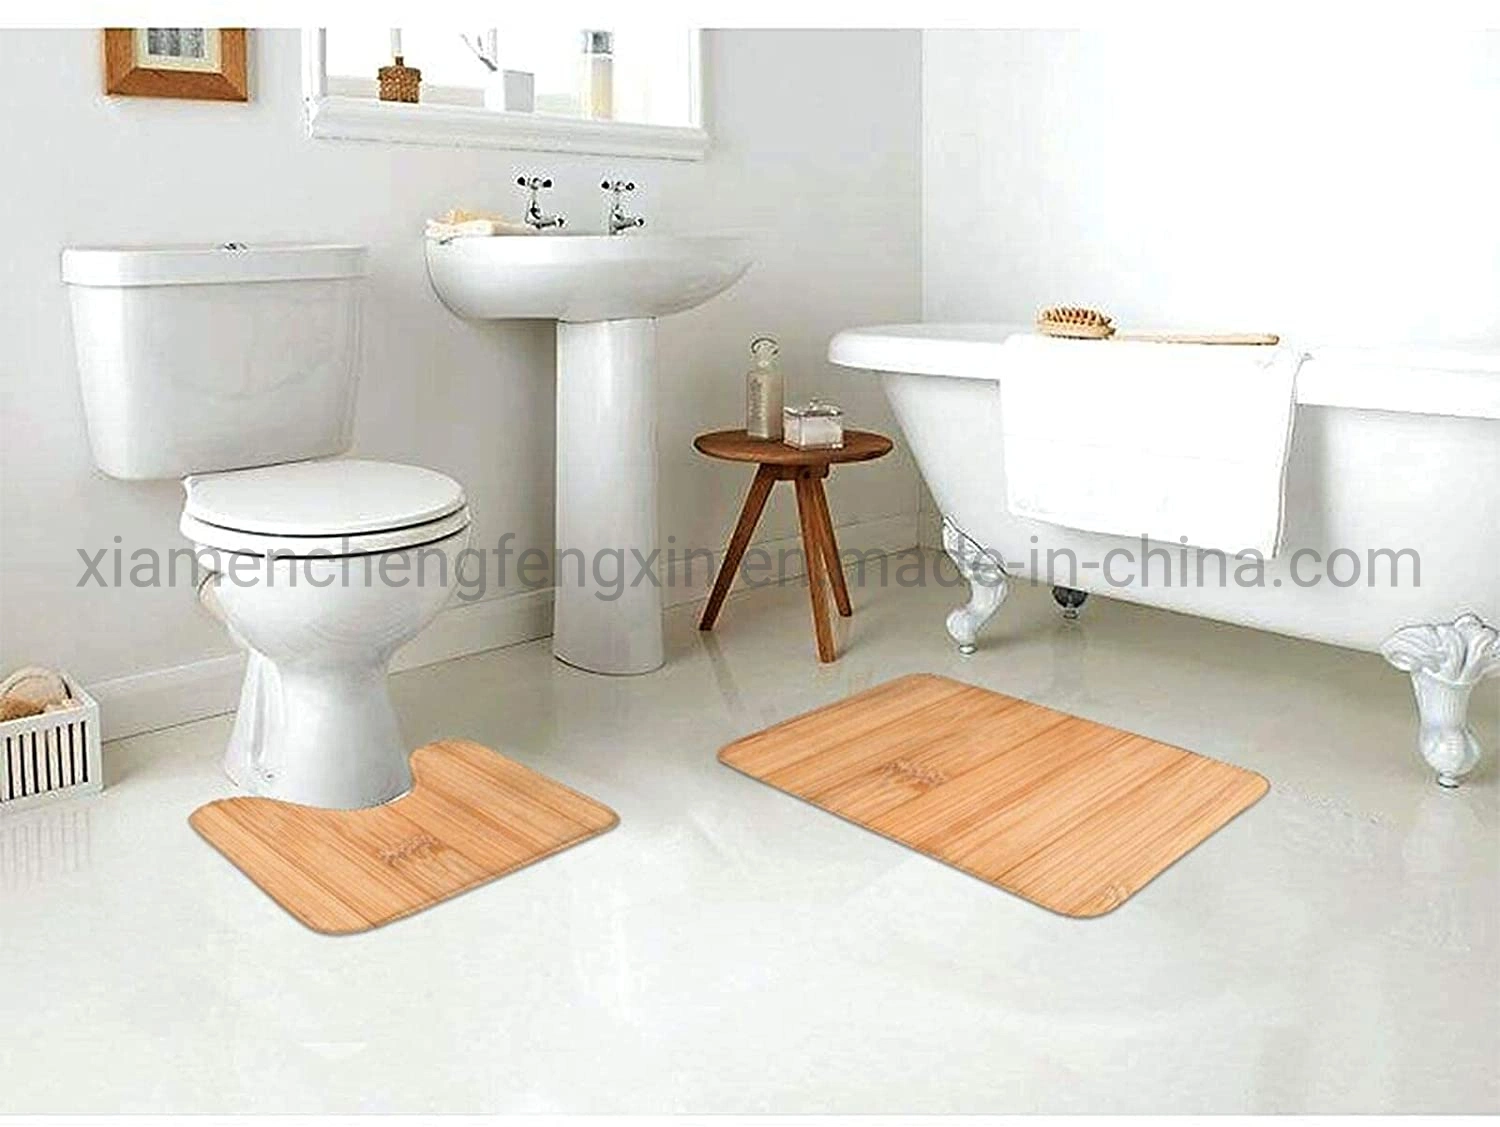 Alfombrilla de baño de madera de bambú 2 piezas Juego de alfombra de baño alfombrilla de baño suave + almohadillas de contorno, baño de alfombra absorbente y alfombrilla Anti-Slip juego de almohadillas